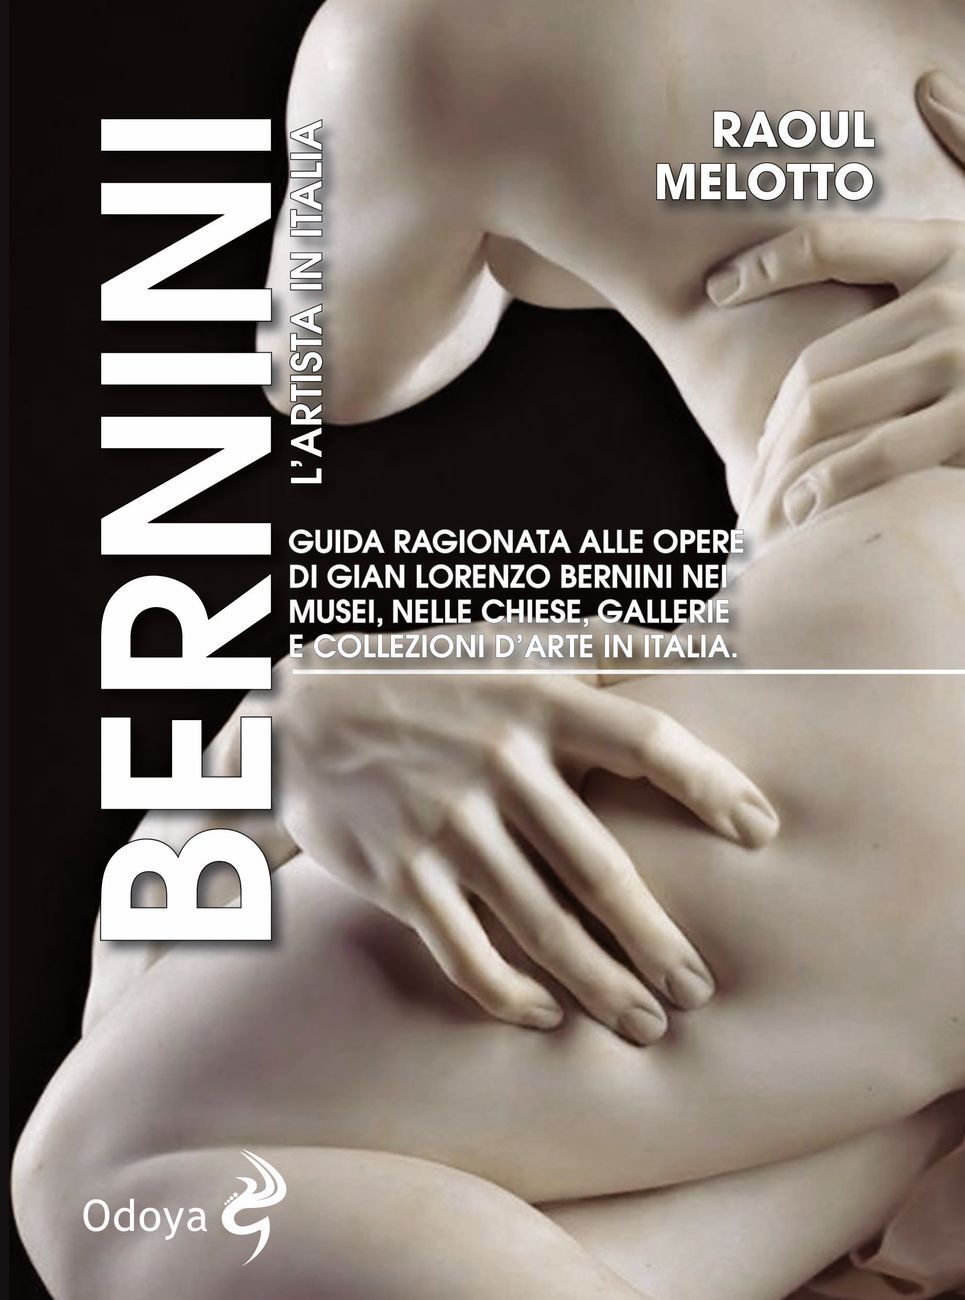 Raoul Melotto – Bernini. L’artista in Italia (Odoya, Bologna 2018)